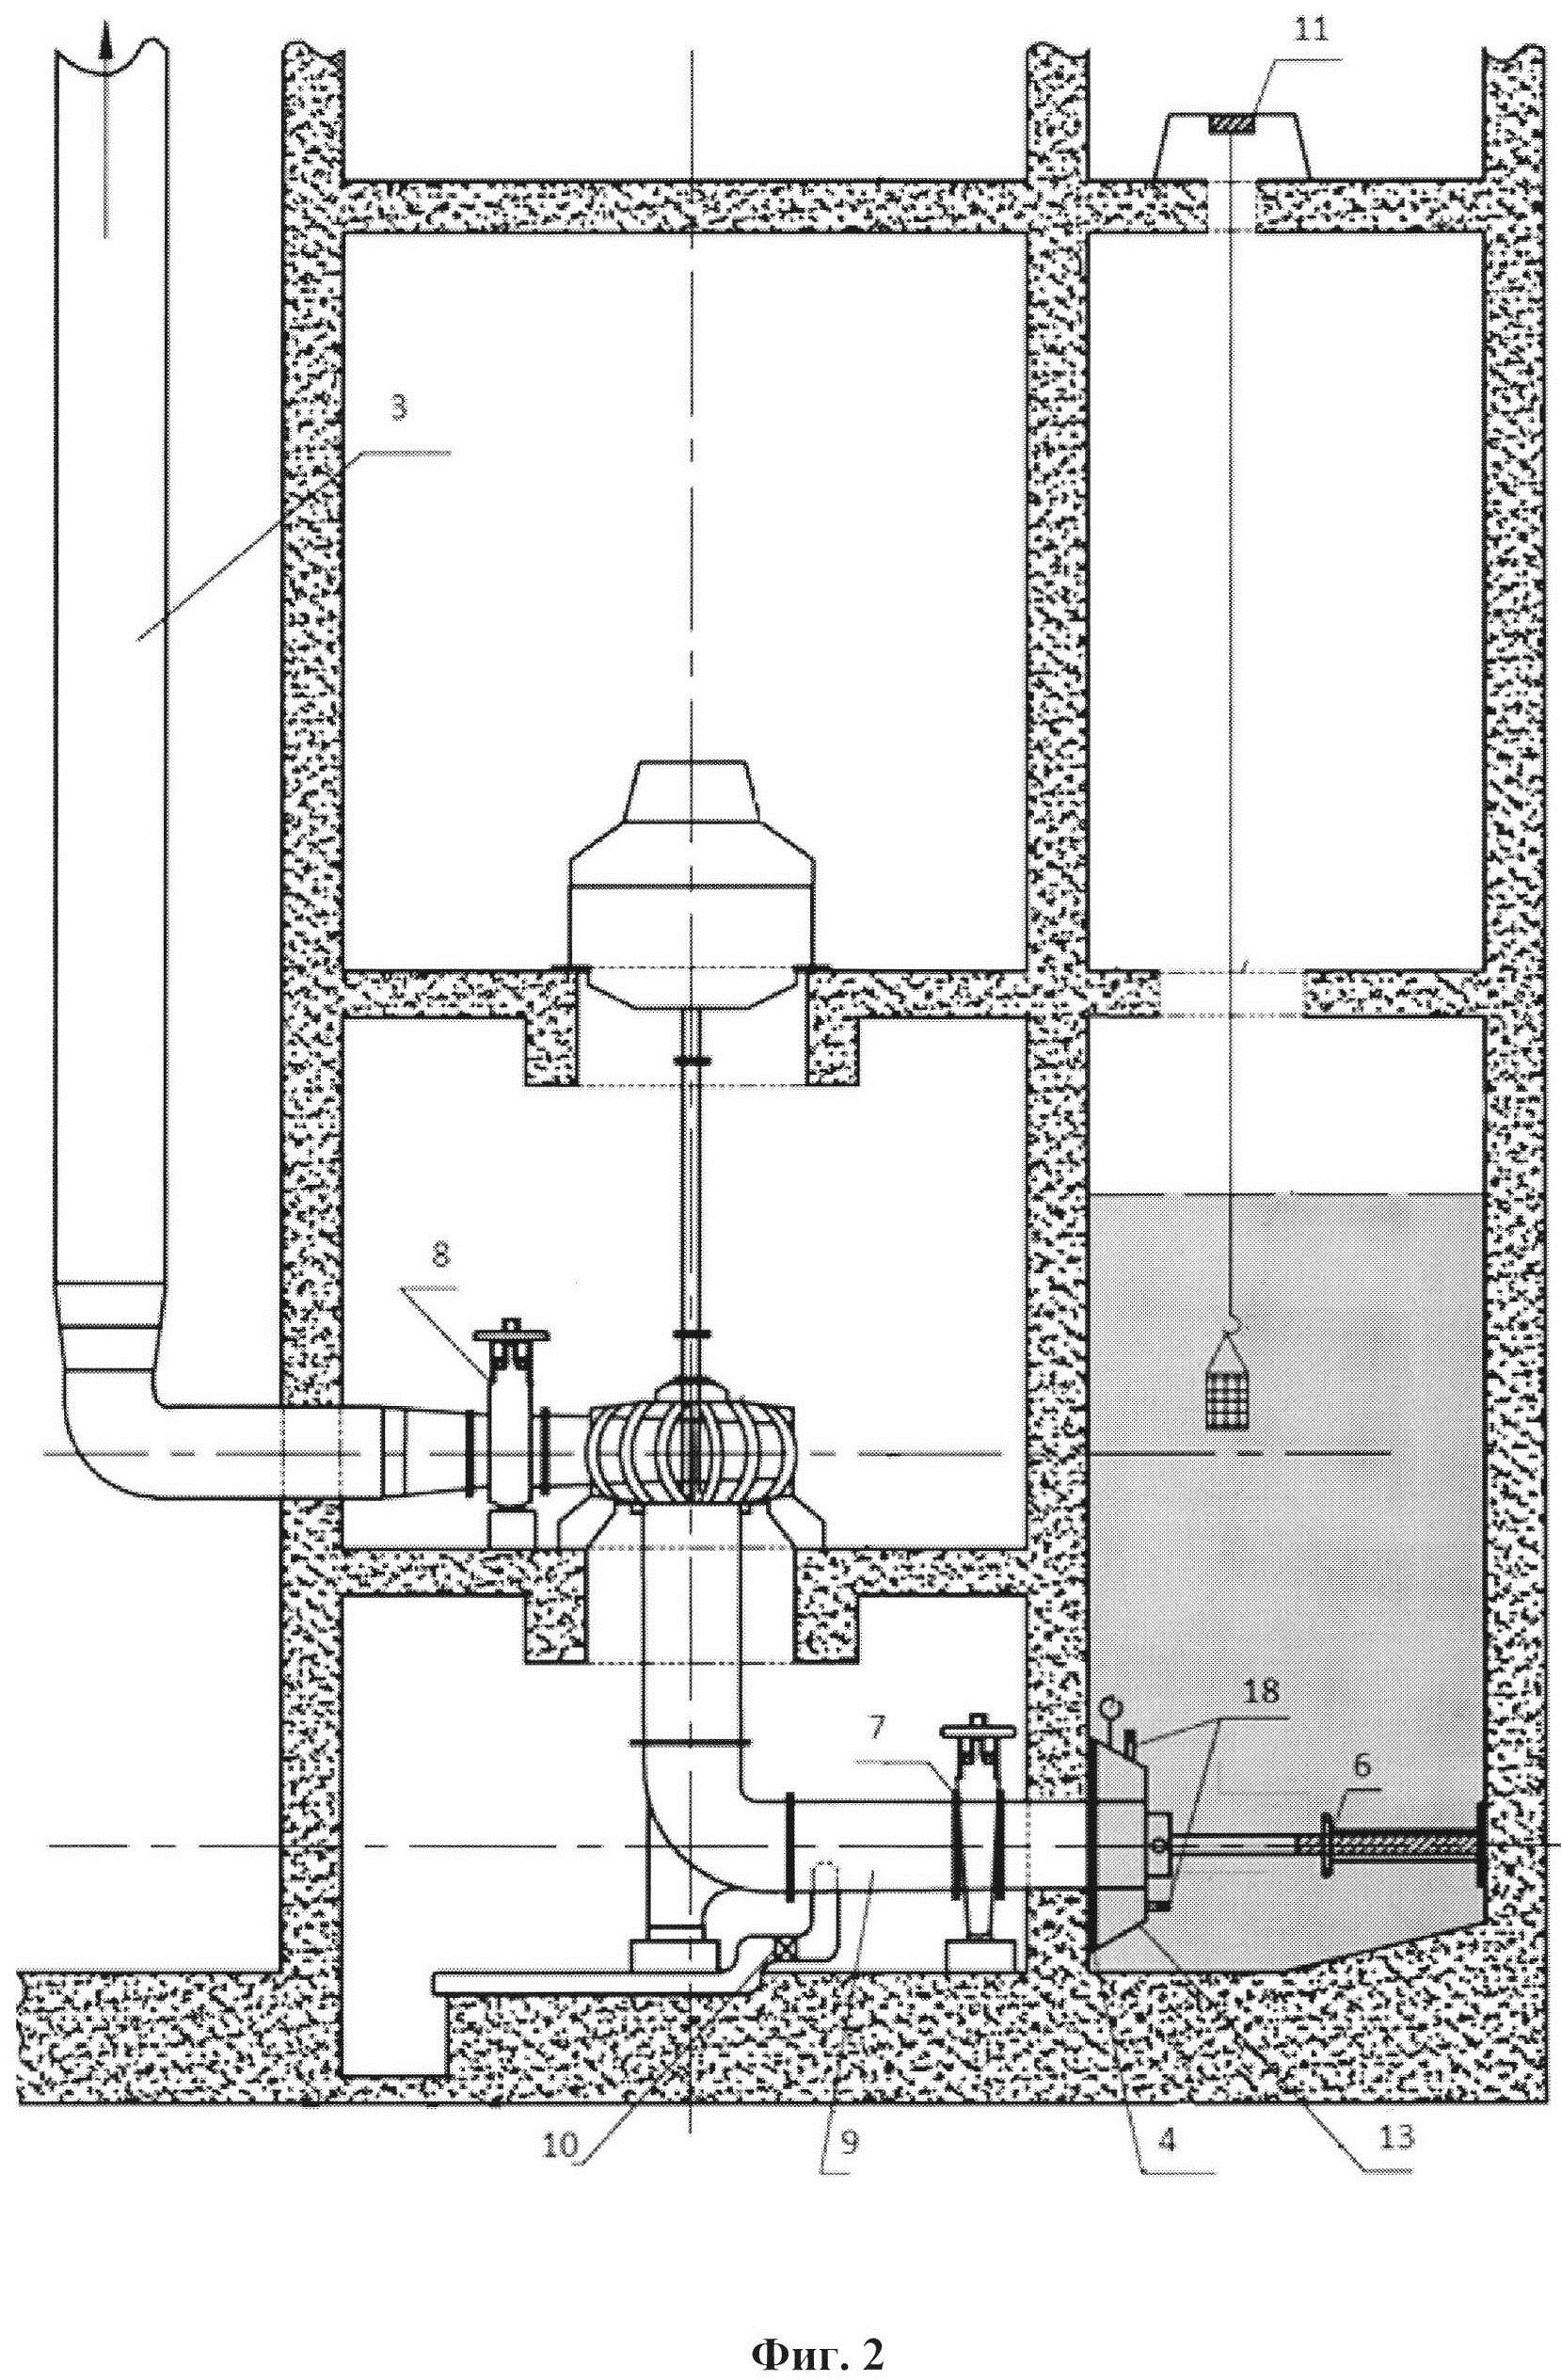 Способ замены задвижки на всасывающем трубопроводе насосного агрегата и временный участок в подводной зоне приемного отделения канализационной насосной станции